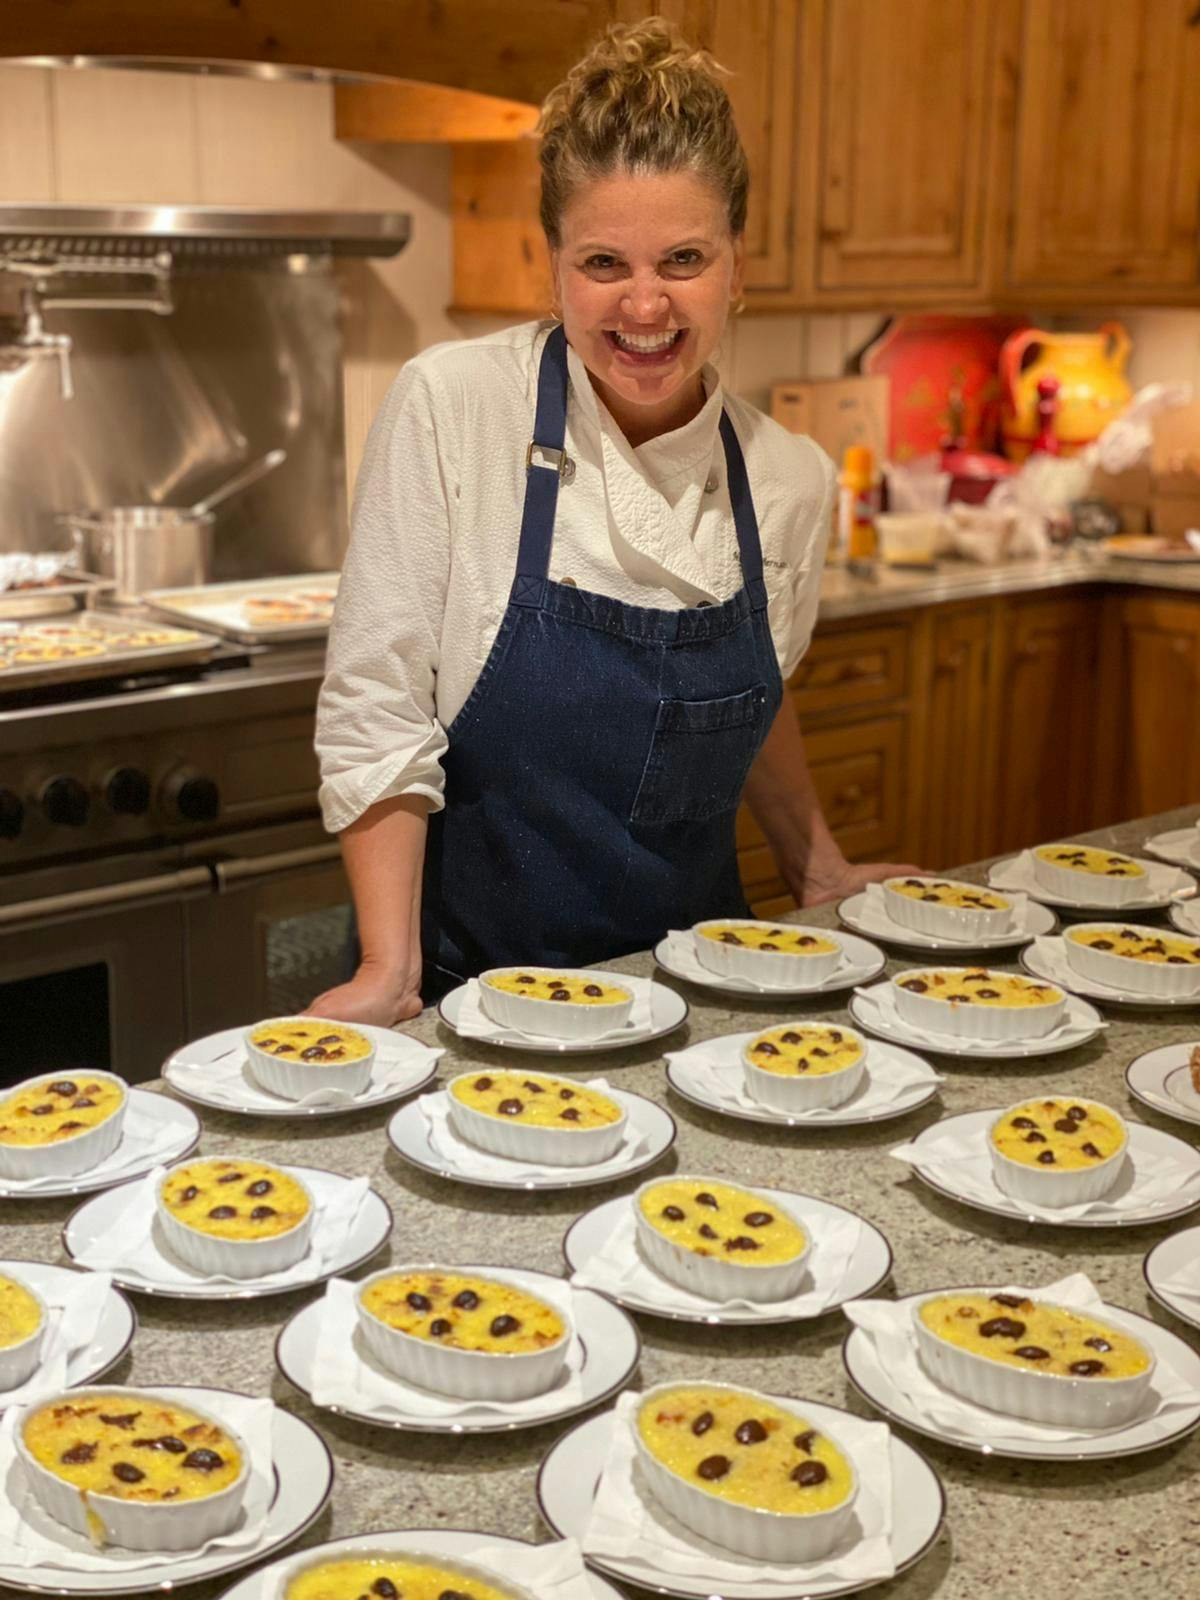 Michelle Bernstein preparing food in a kitchen